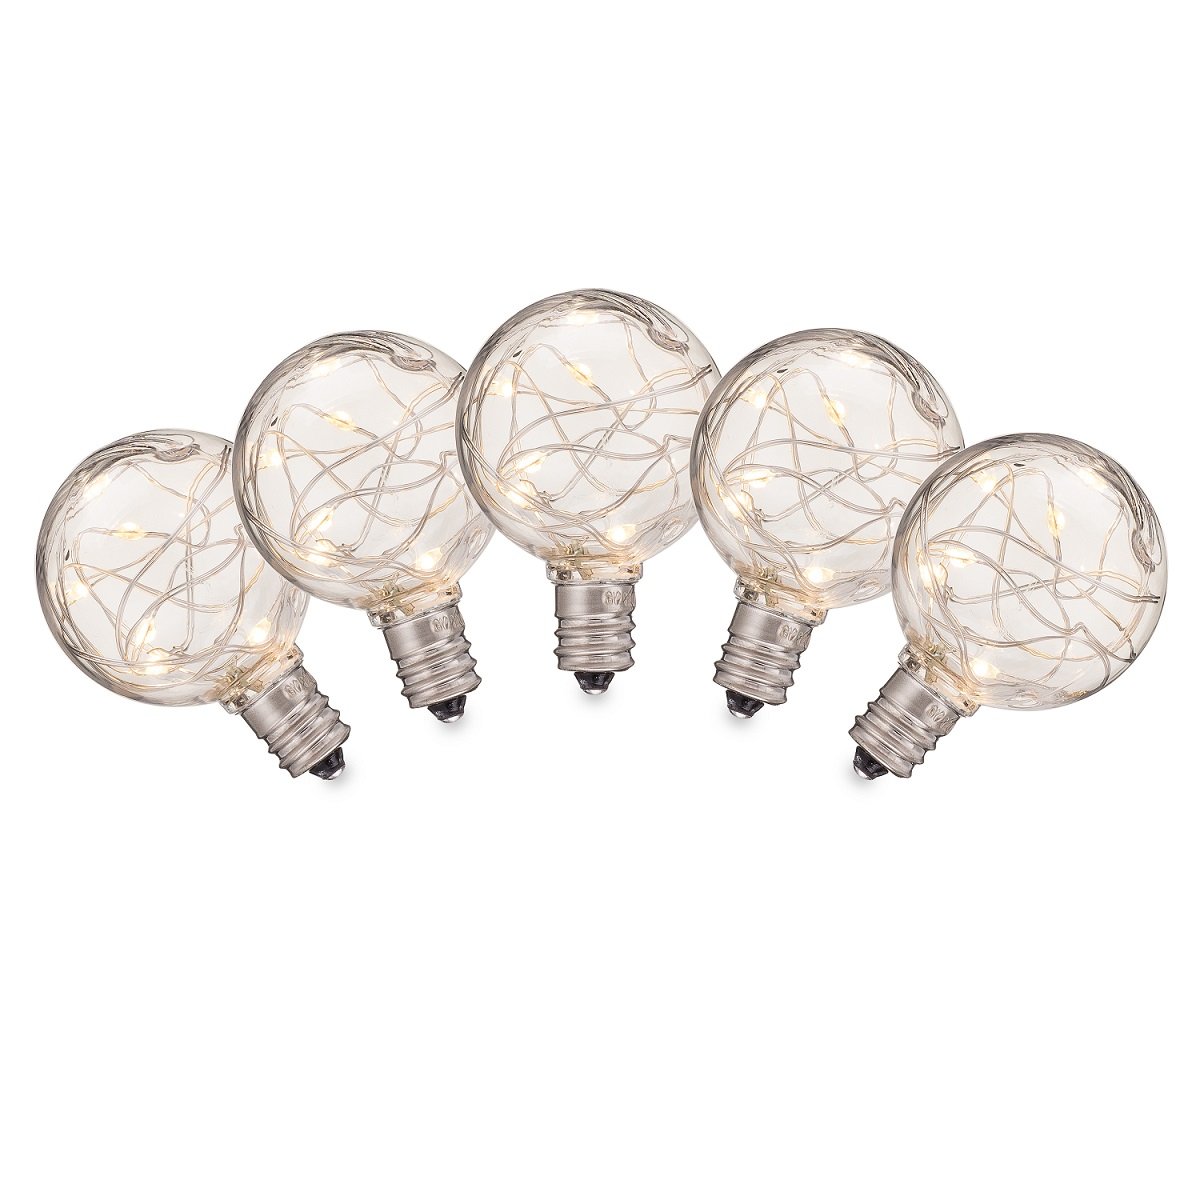 G40 LED Fairy Light Bulbs · 12 Pack of C7 Lights - HLO Lighting